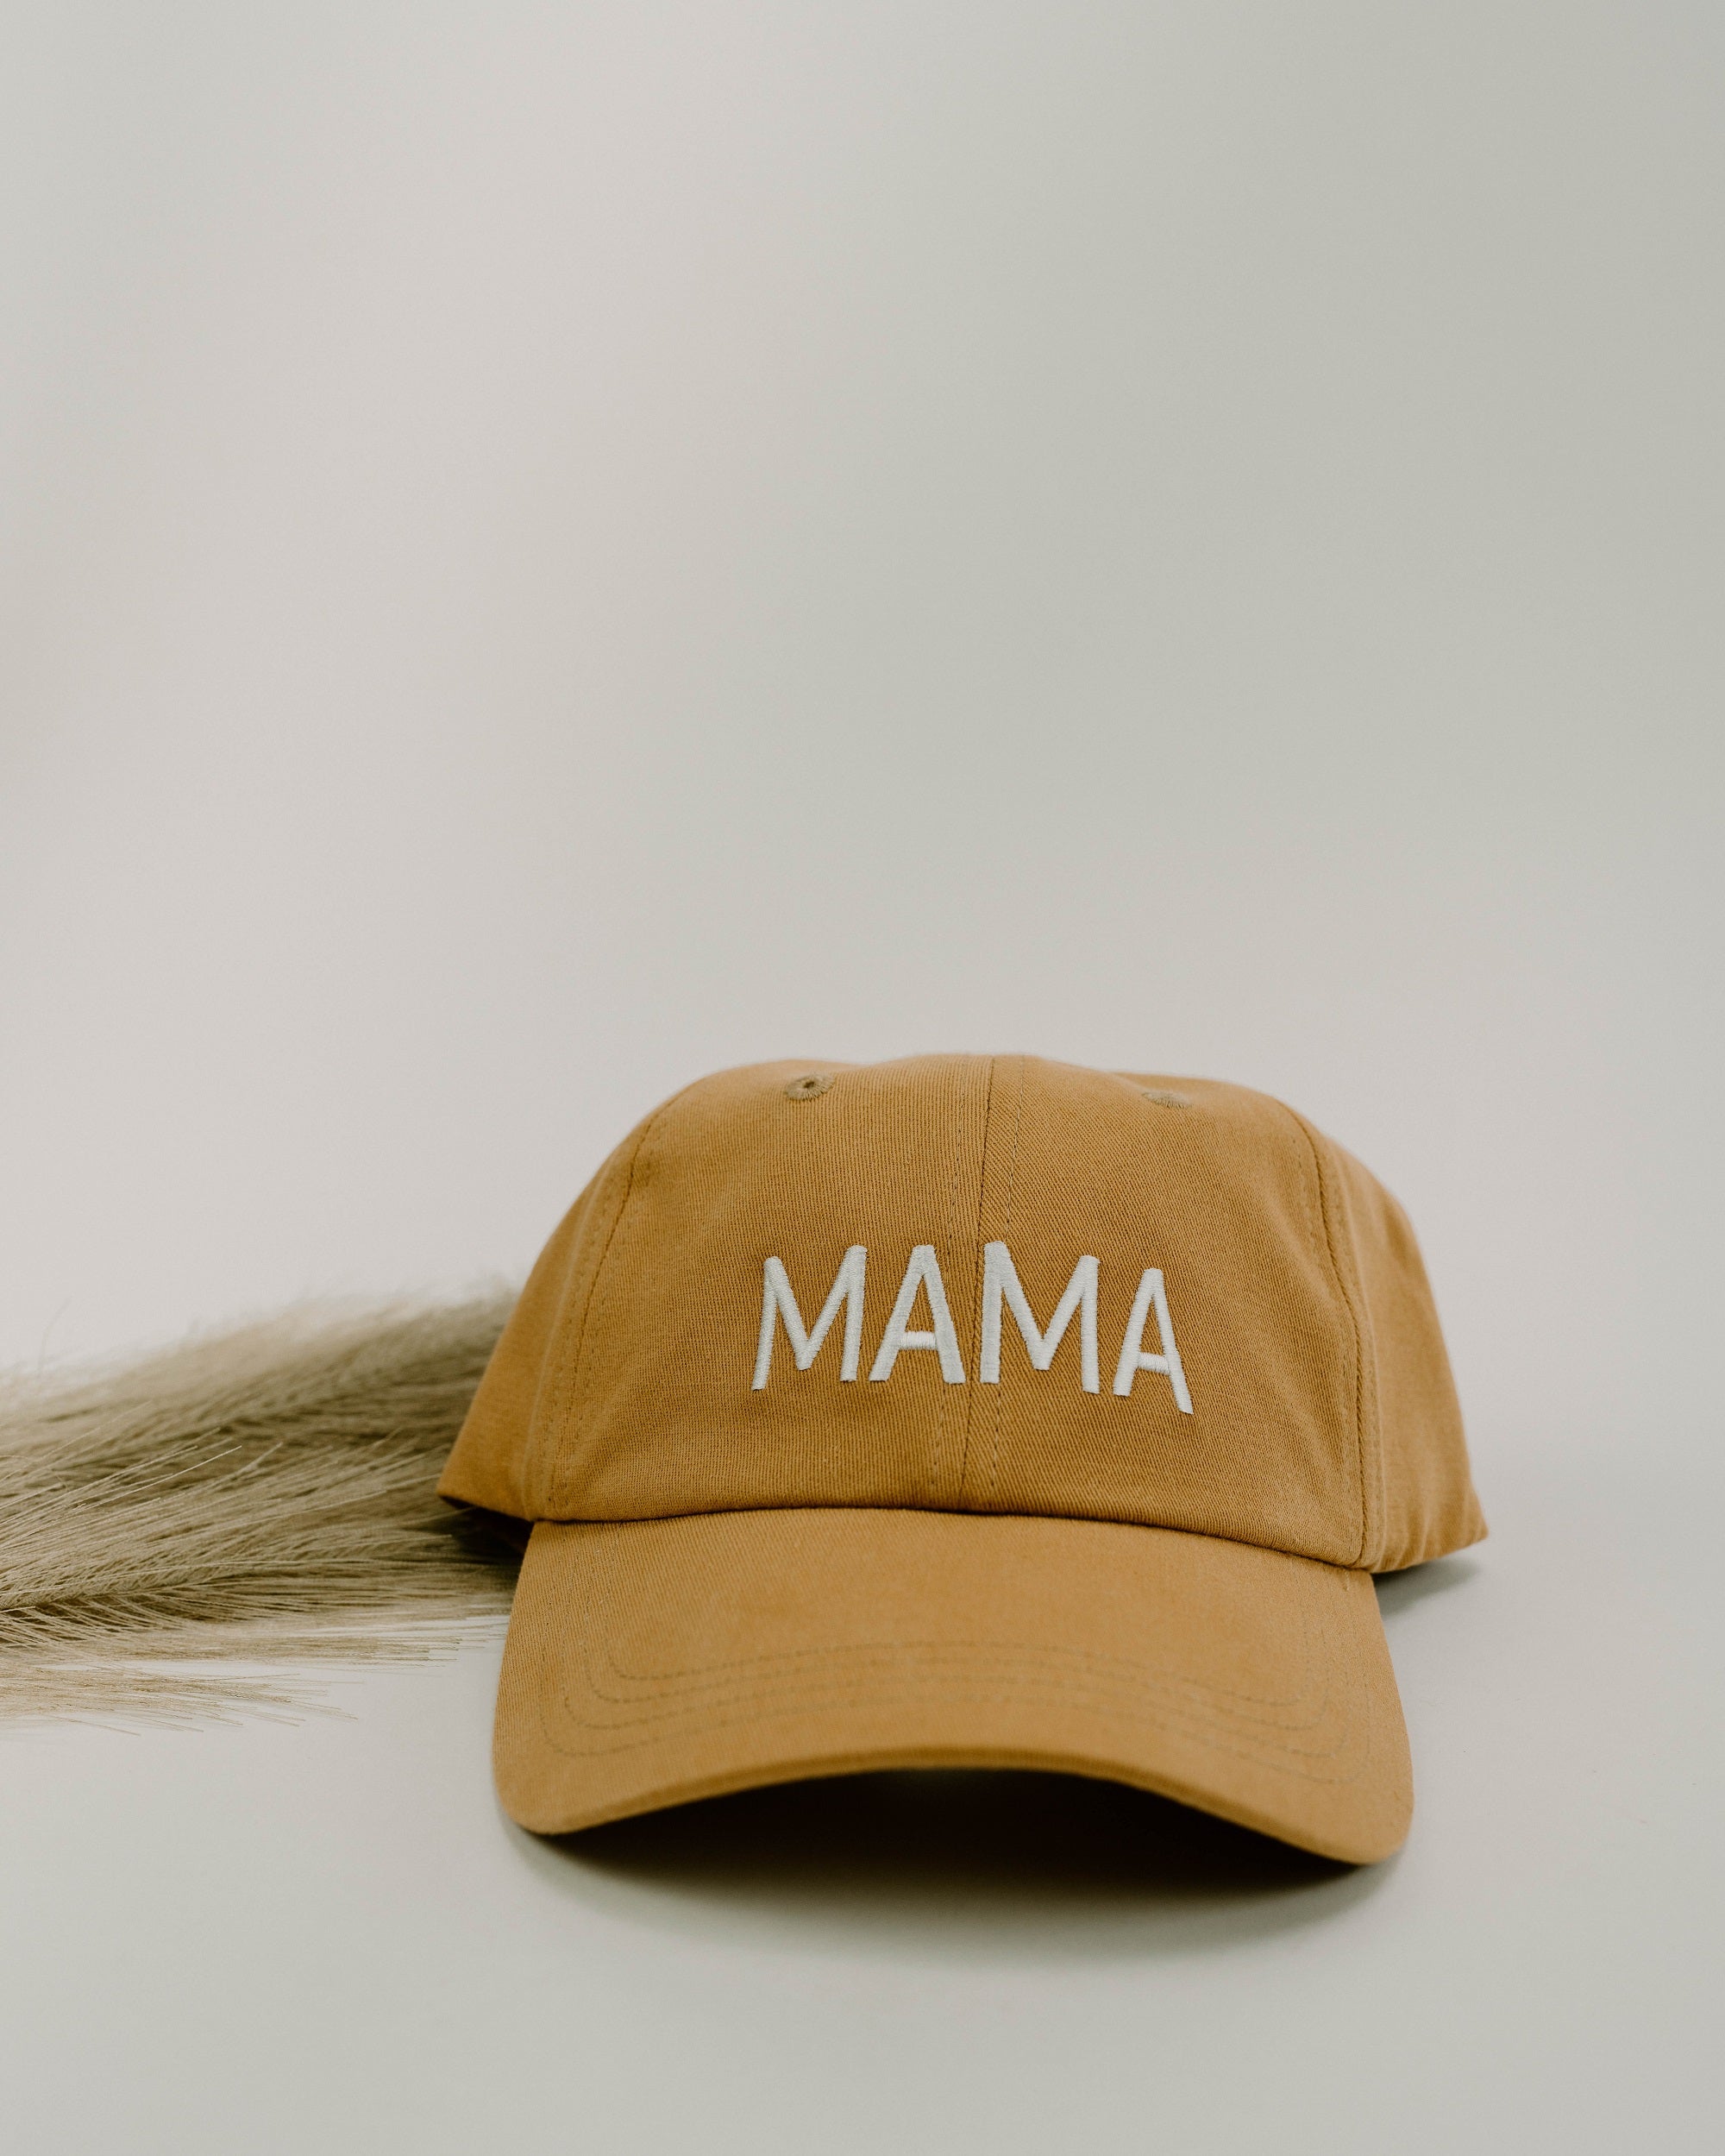 Mama baseball cap